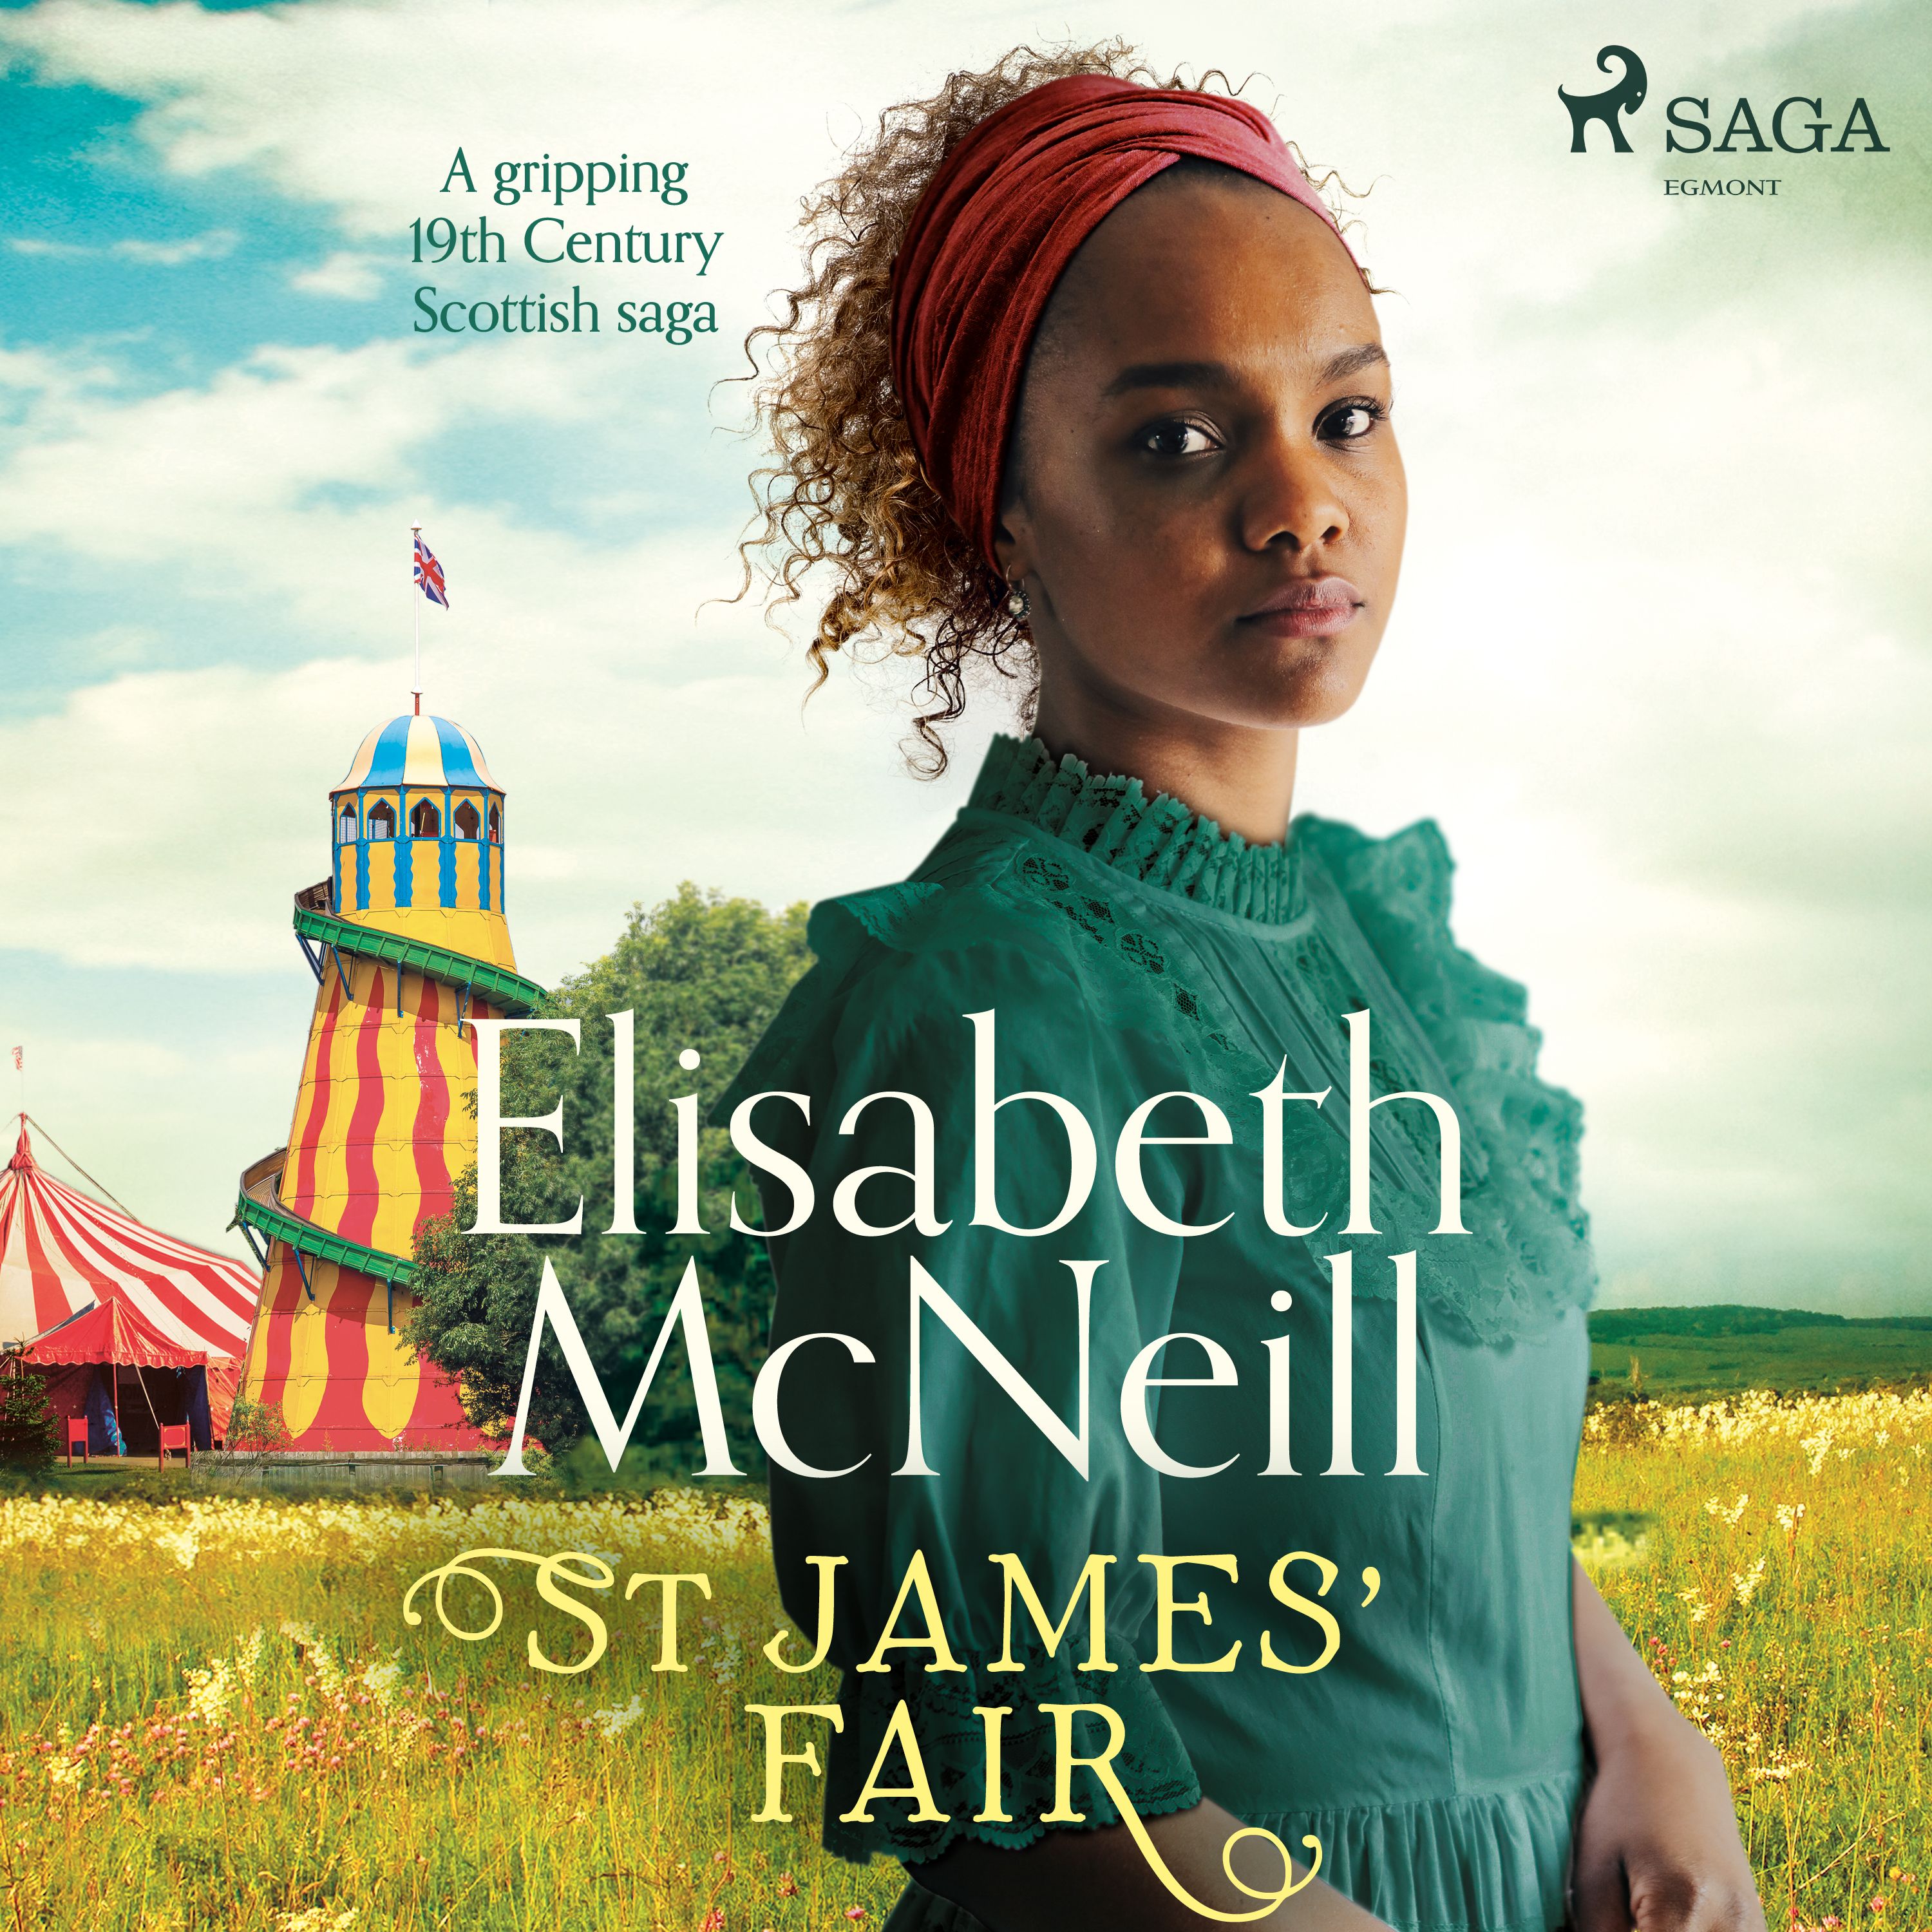 St James' Fair, ljudbok av Elisabeth Mcneill